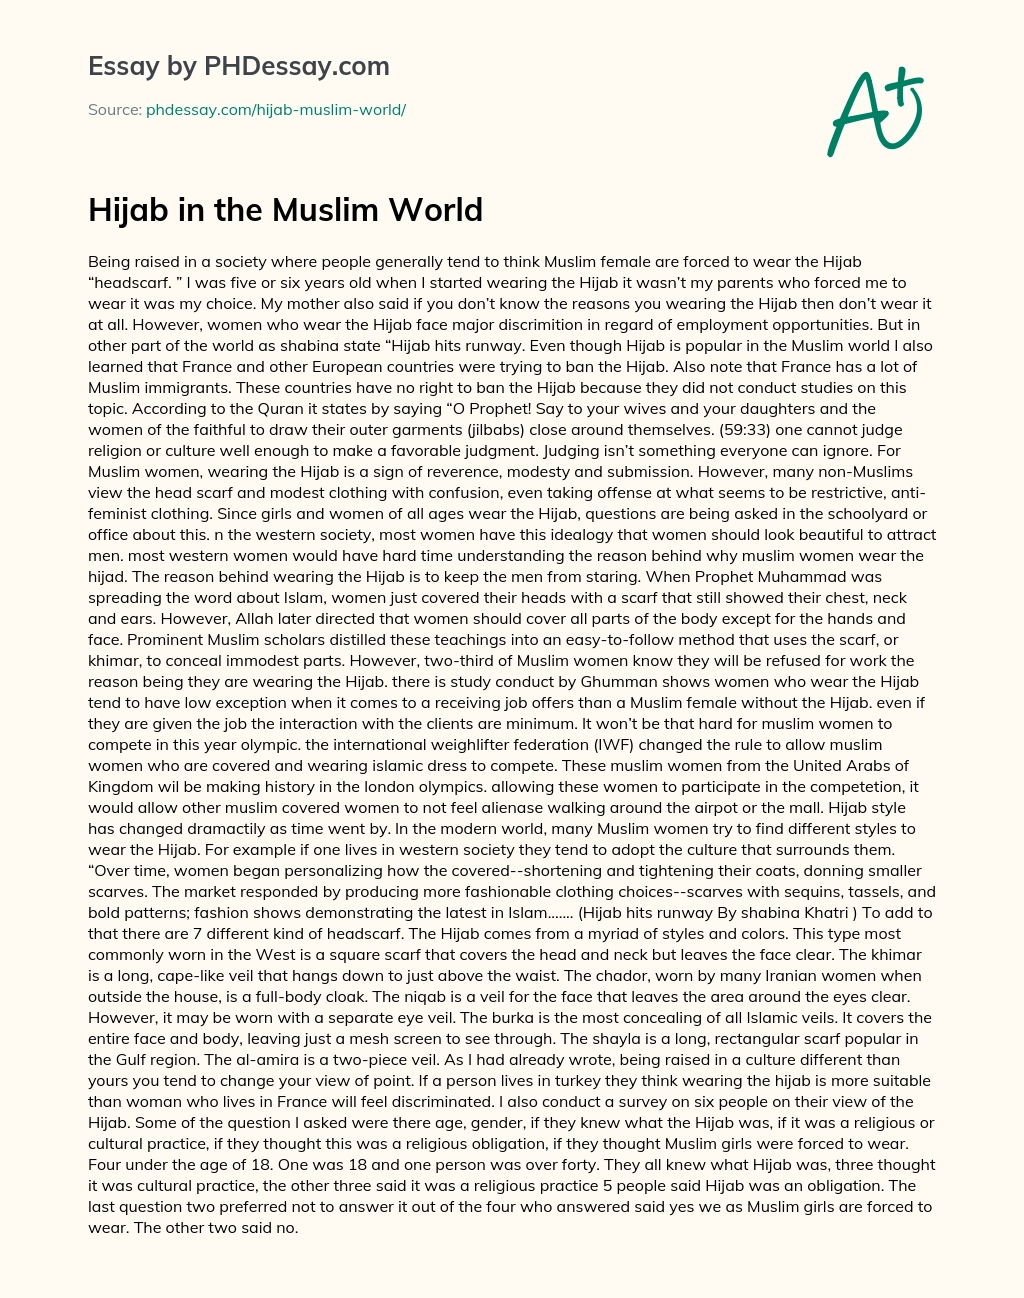 hijab essay